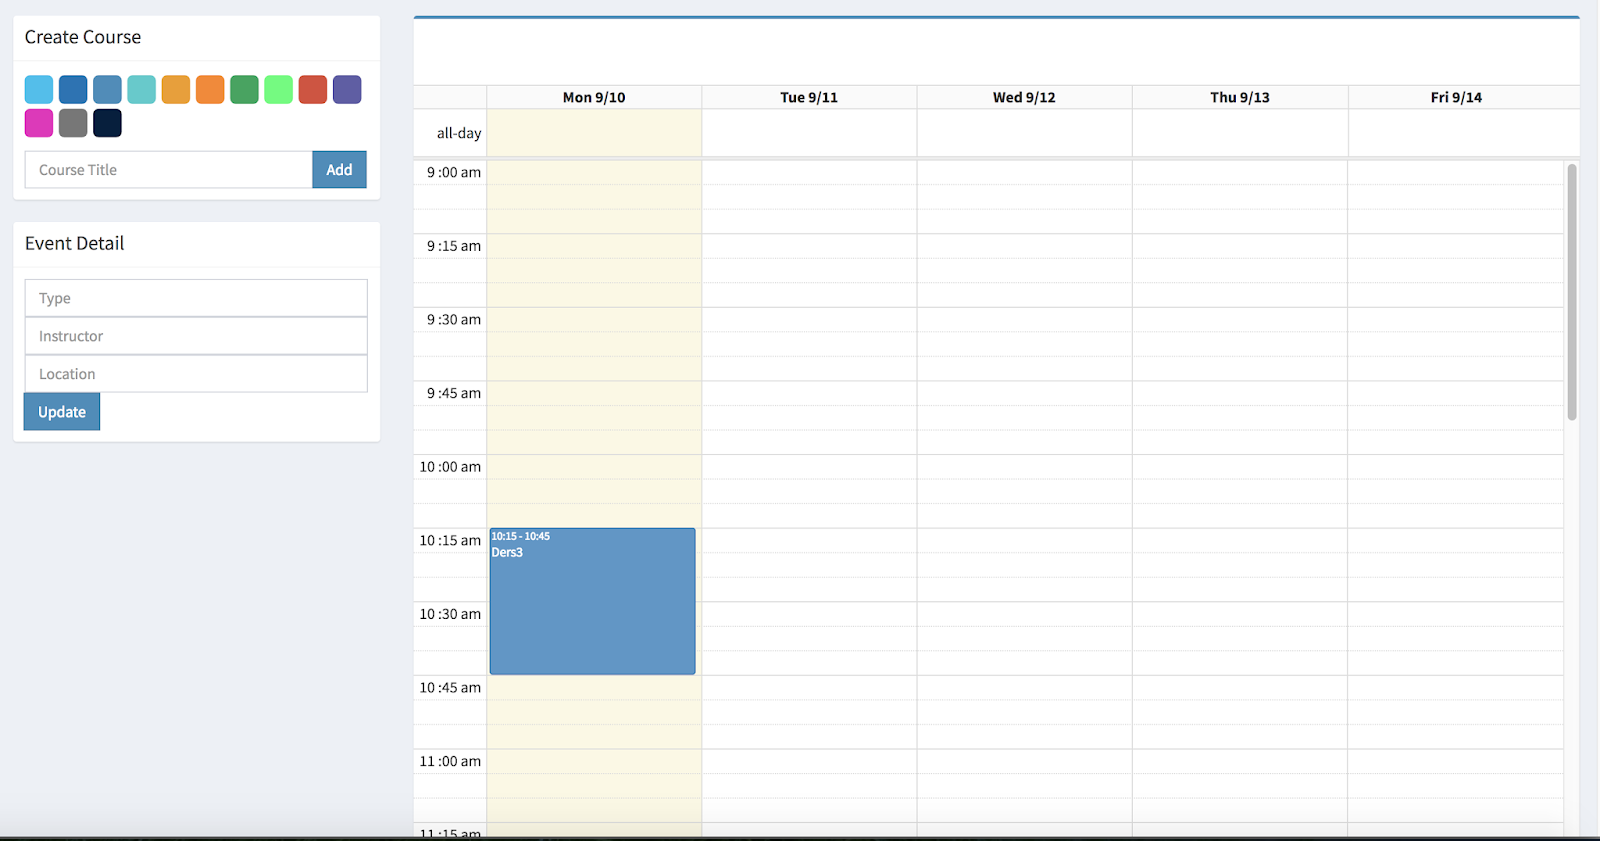 college-schedule-maker-blog-schedule-maker-online-printable